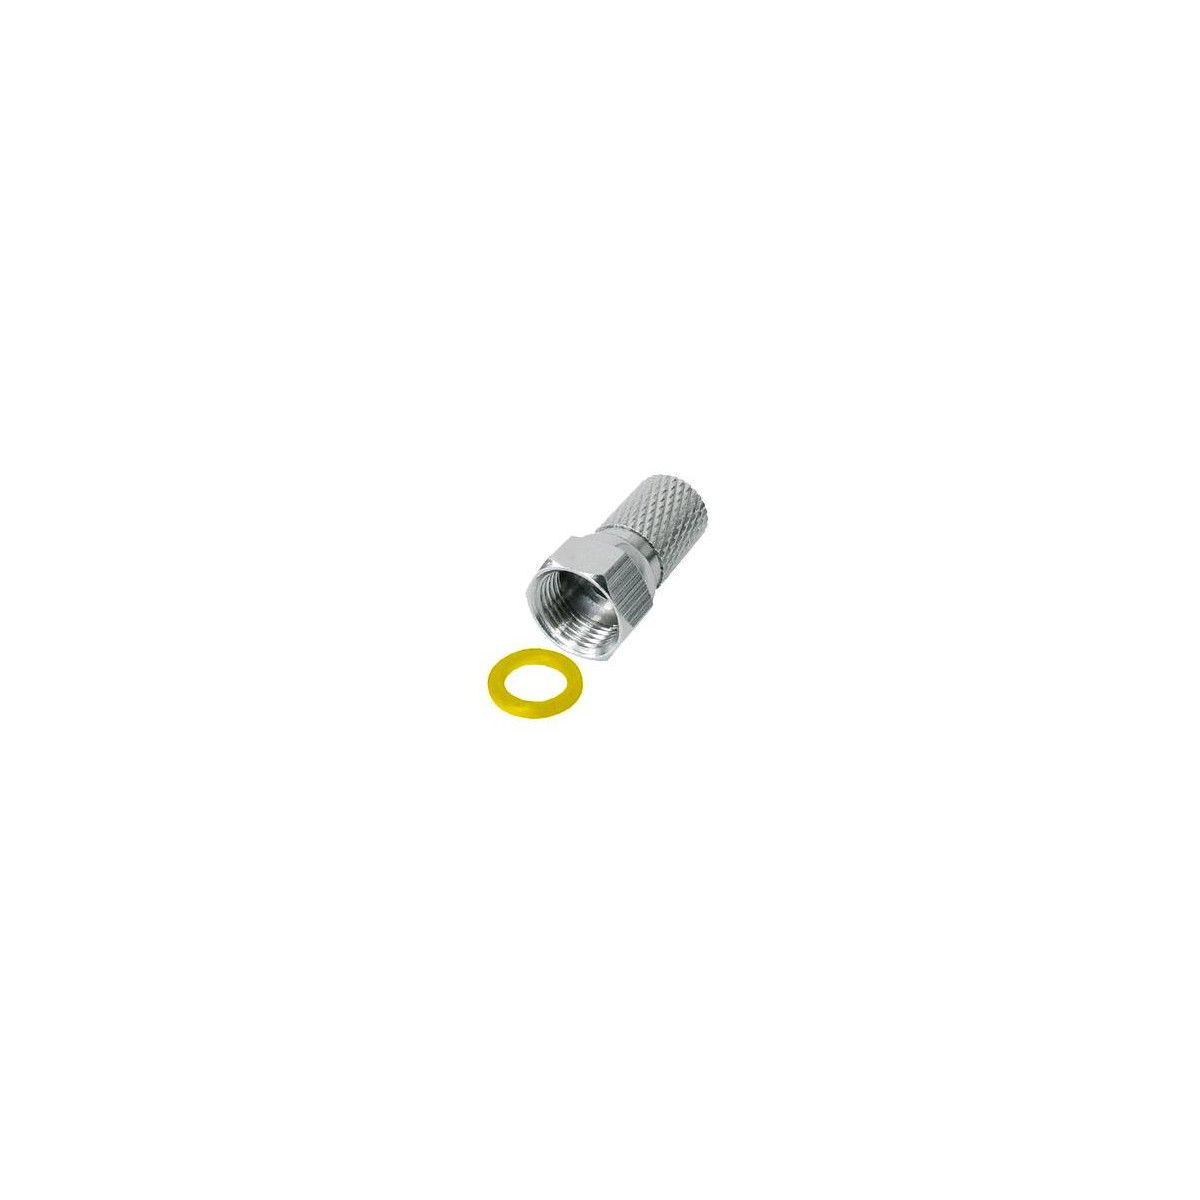 Konektor F 7 mm s gumovým těsněním